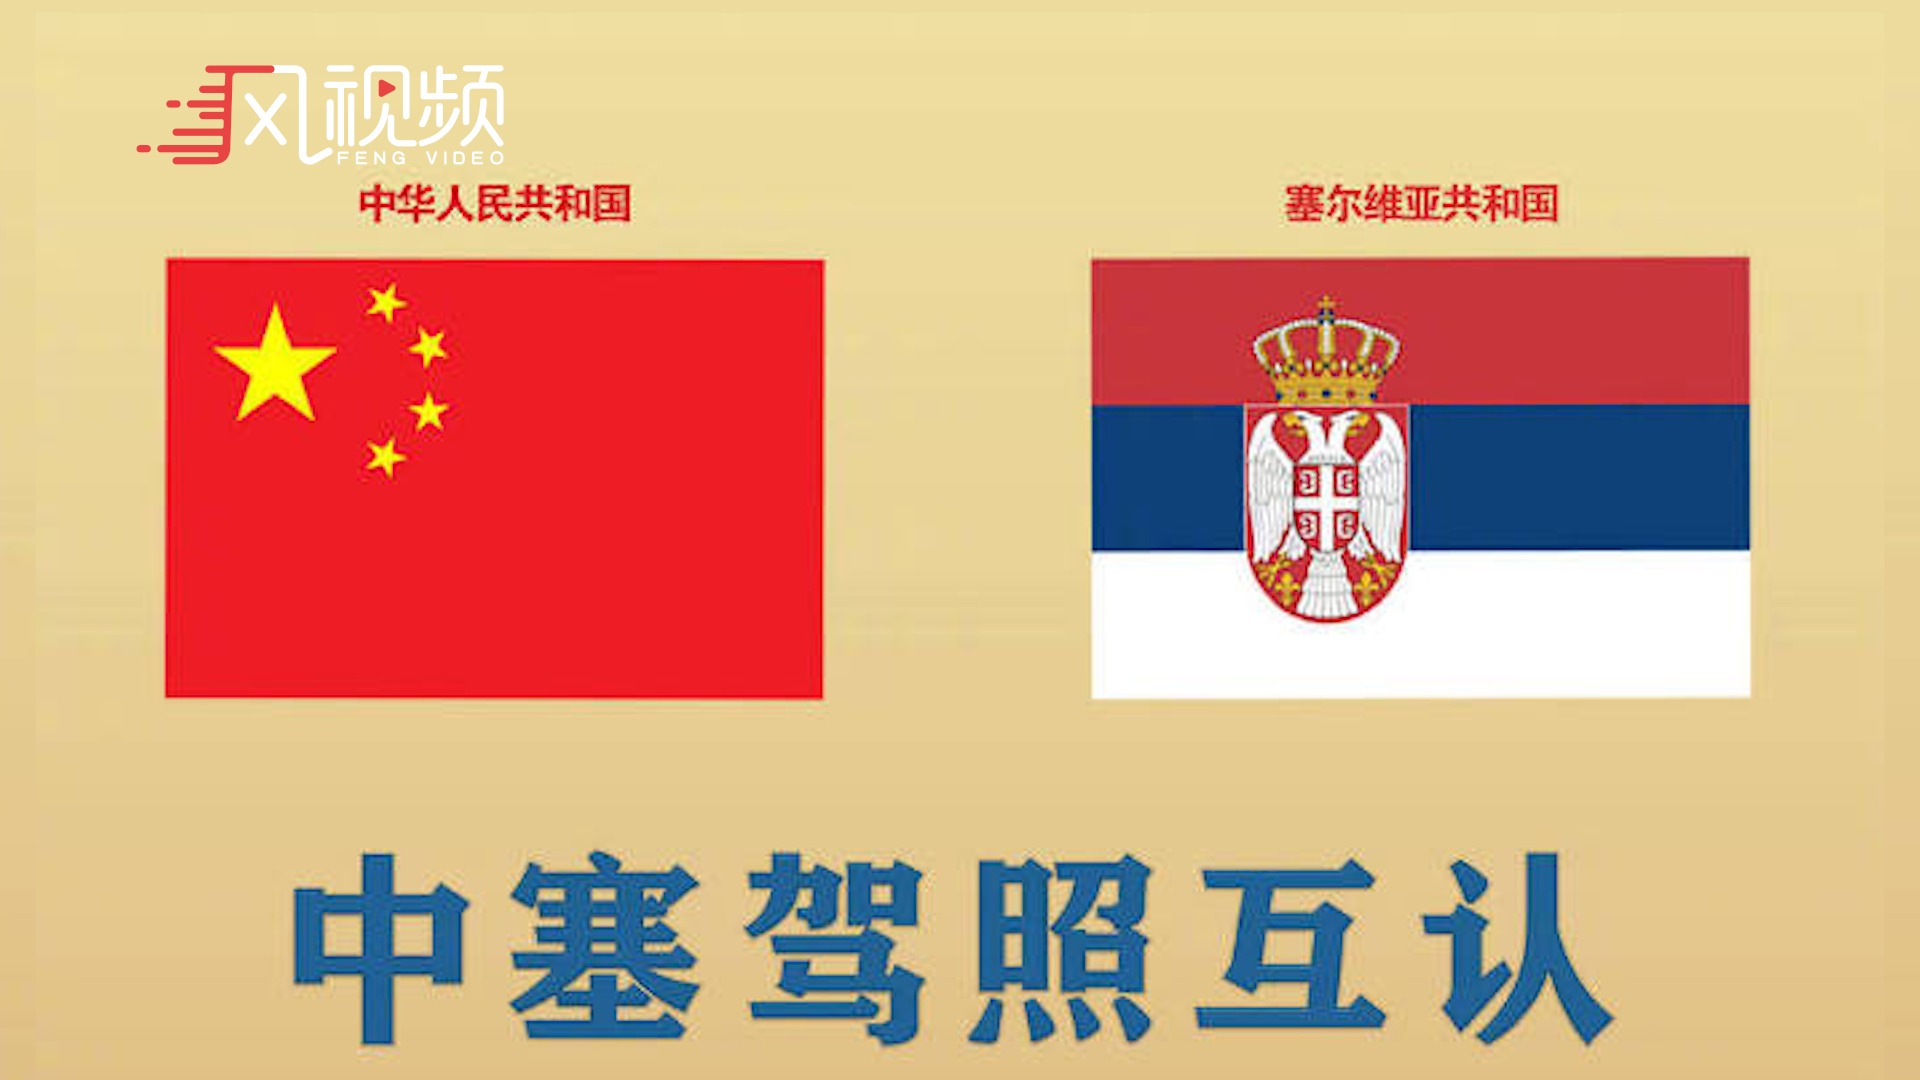 塞尔维亚和中国的兄弟情 - Pluralia